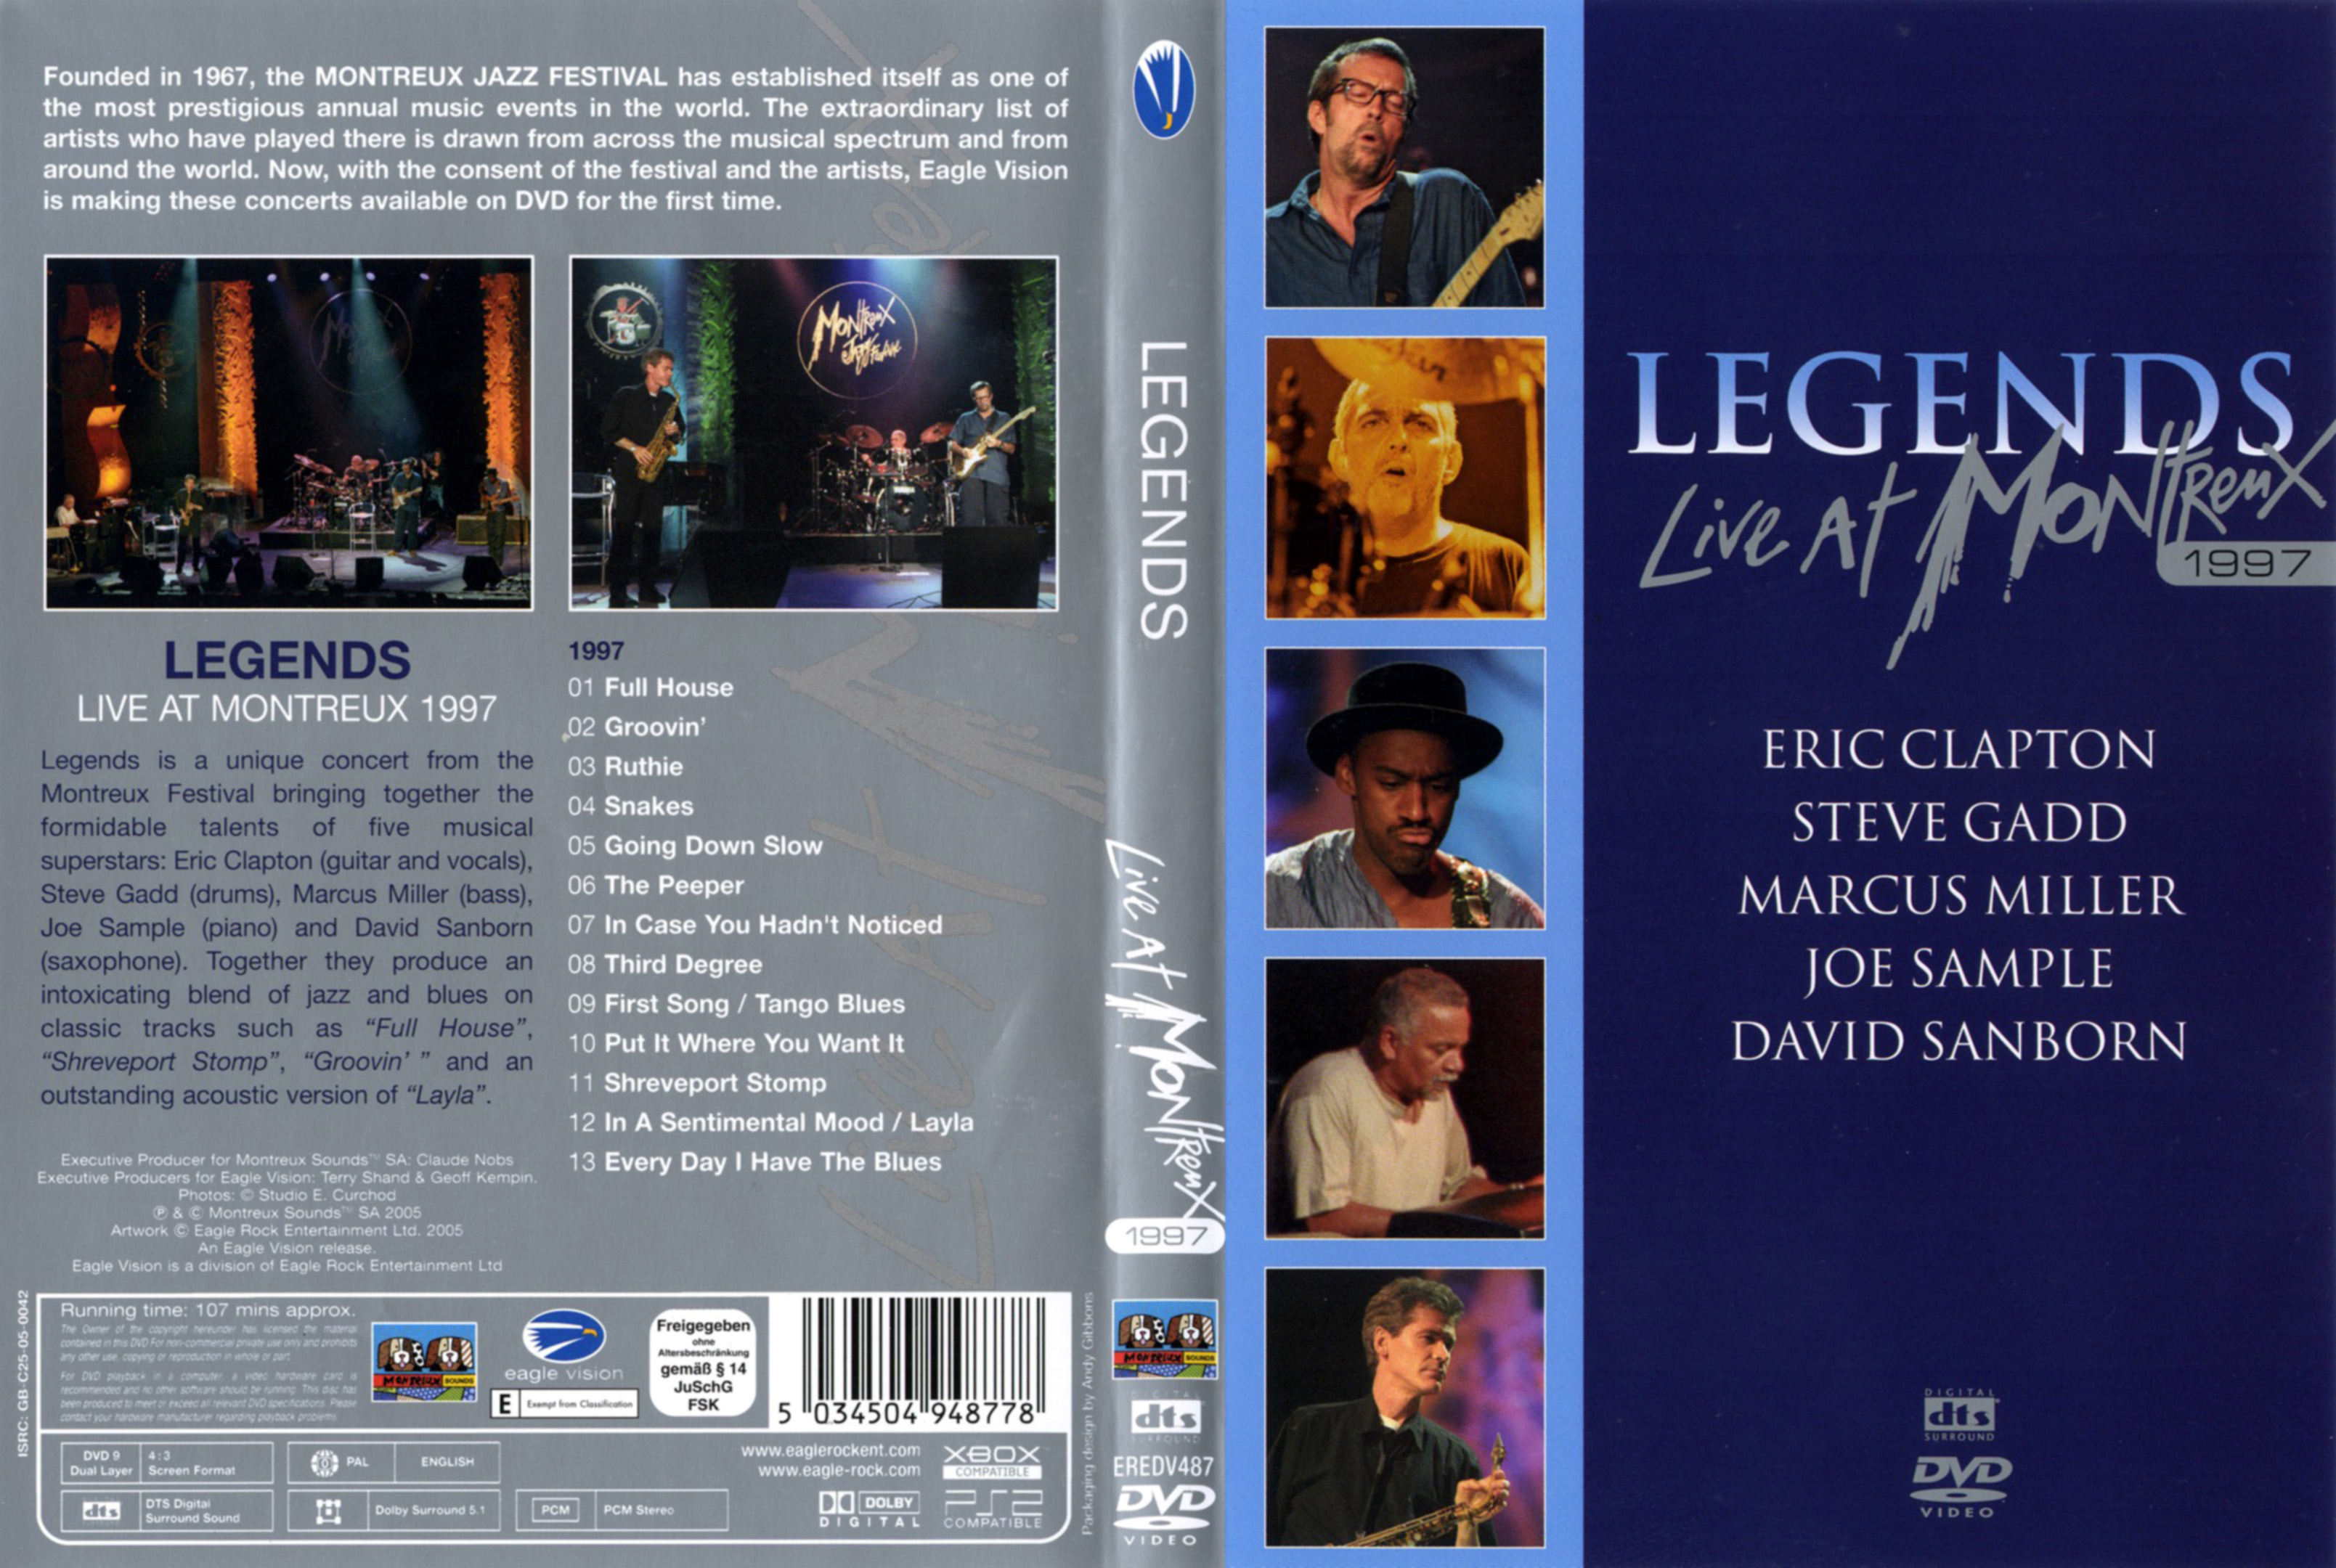 Jaquette DVD Legends live at Montreux 1997